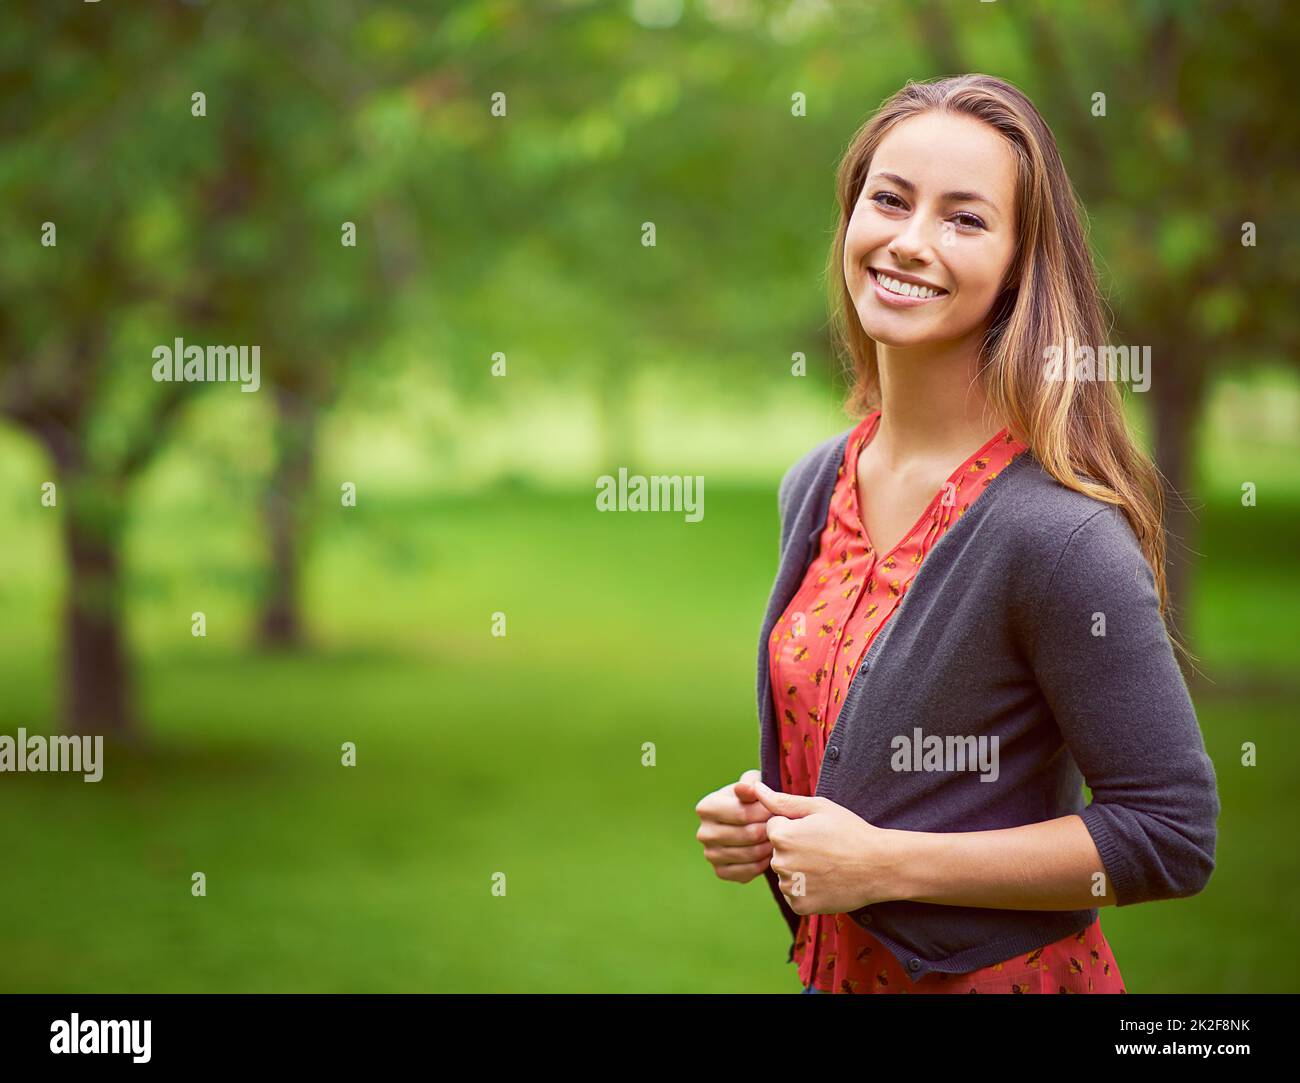 Busque la belleza en cada día. Retrato de una joven de pie al aire libre. Foto de stock